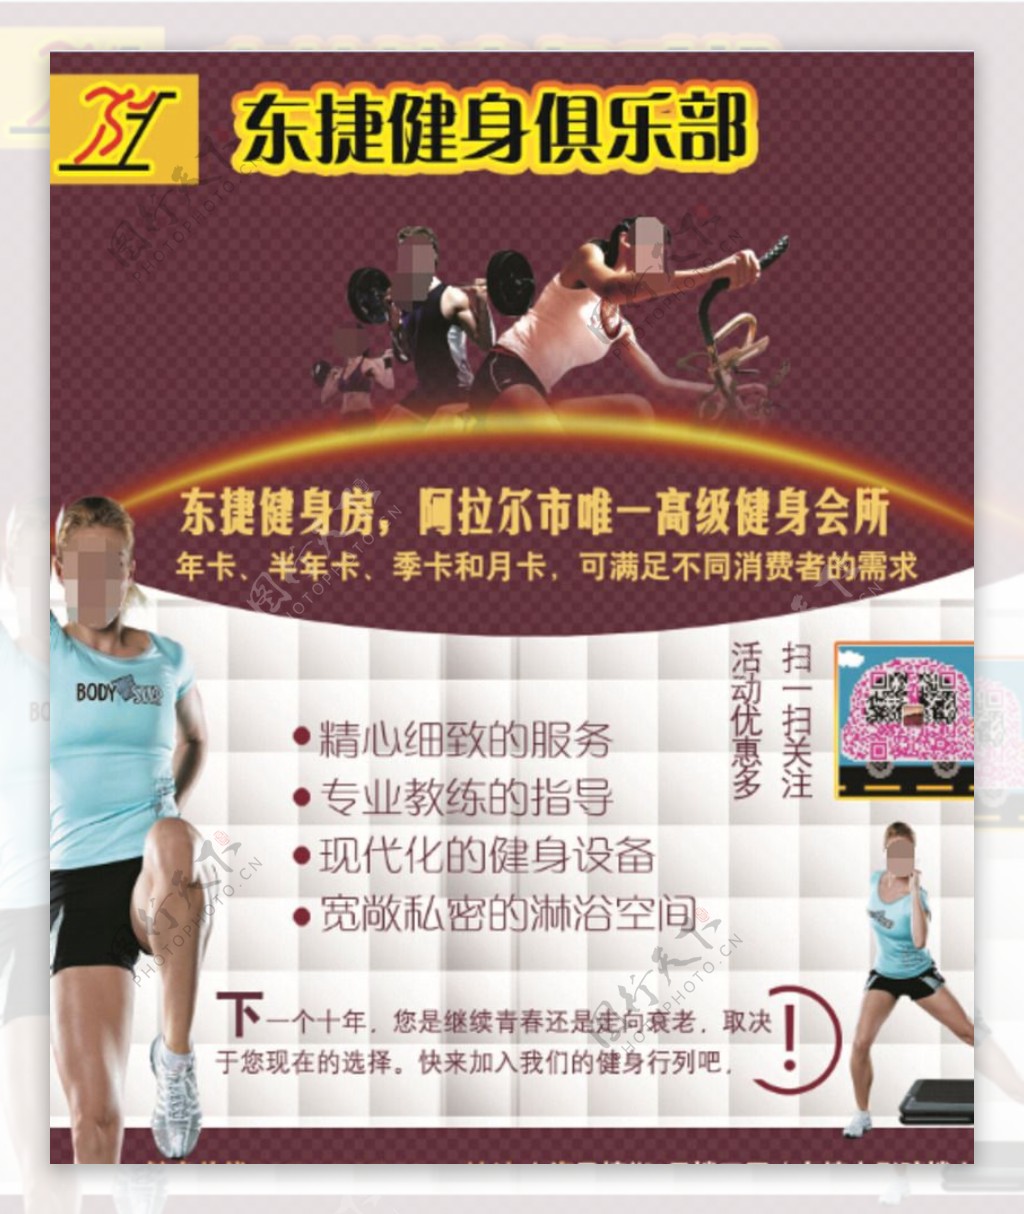 东捷健身俱乐部广告图片